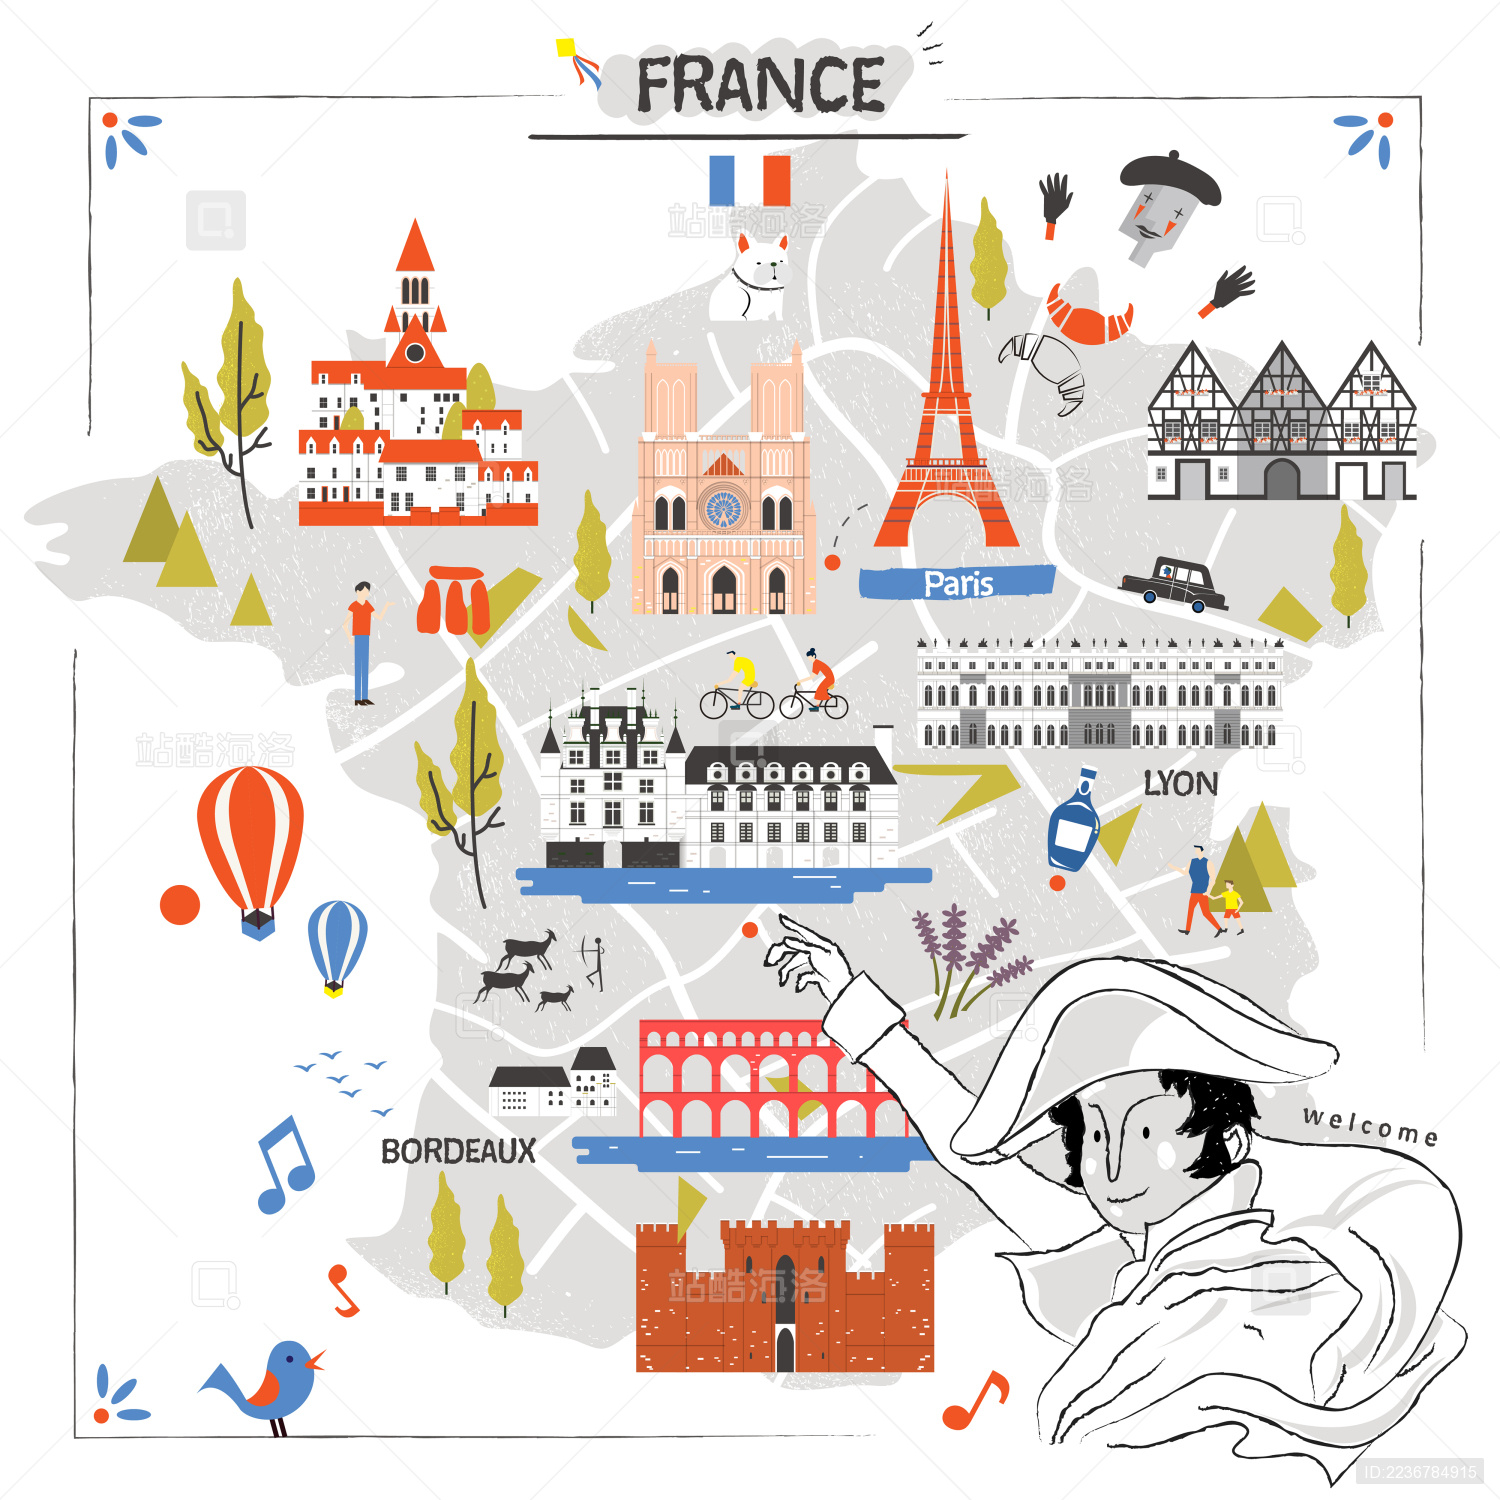 法国地形图 法国山脉分布图_法国地形图高清版大图